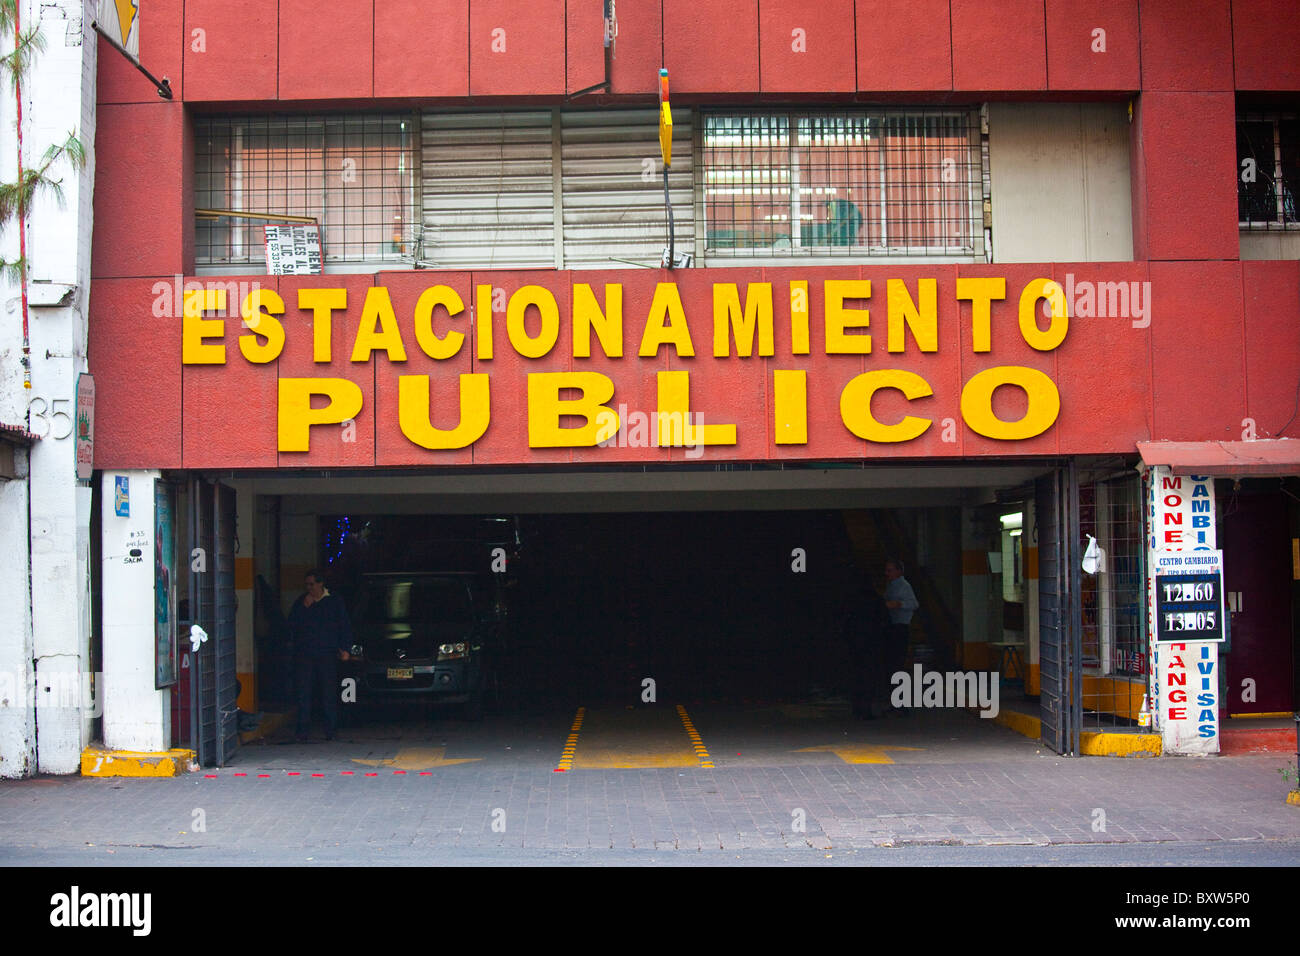 Estacionamiento Publico, Parking garage in Mexico City, Mexico Stock Photo